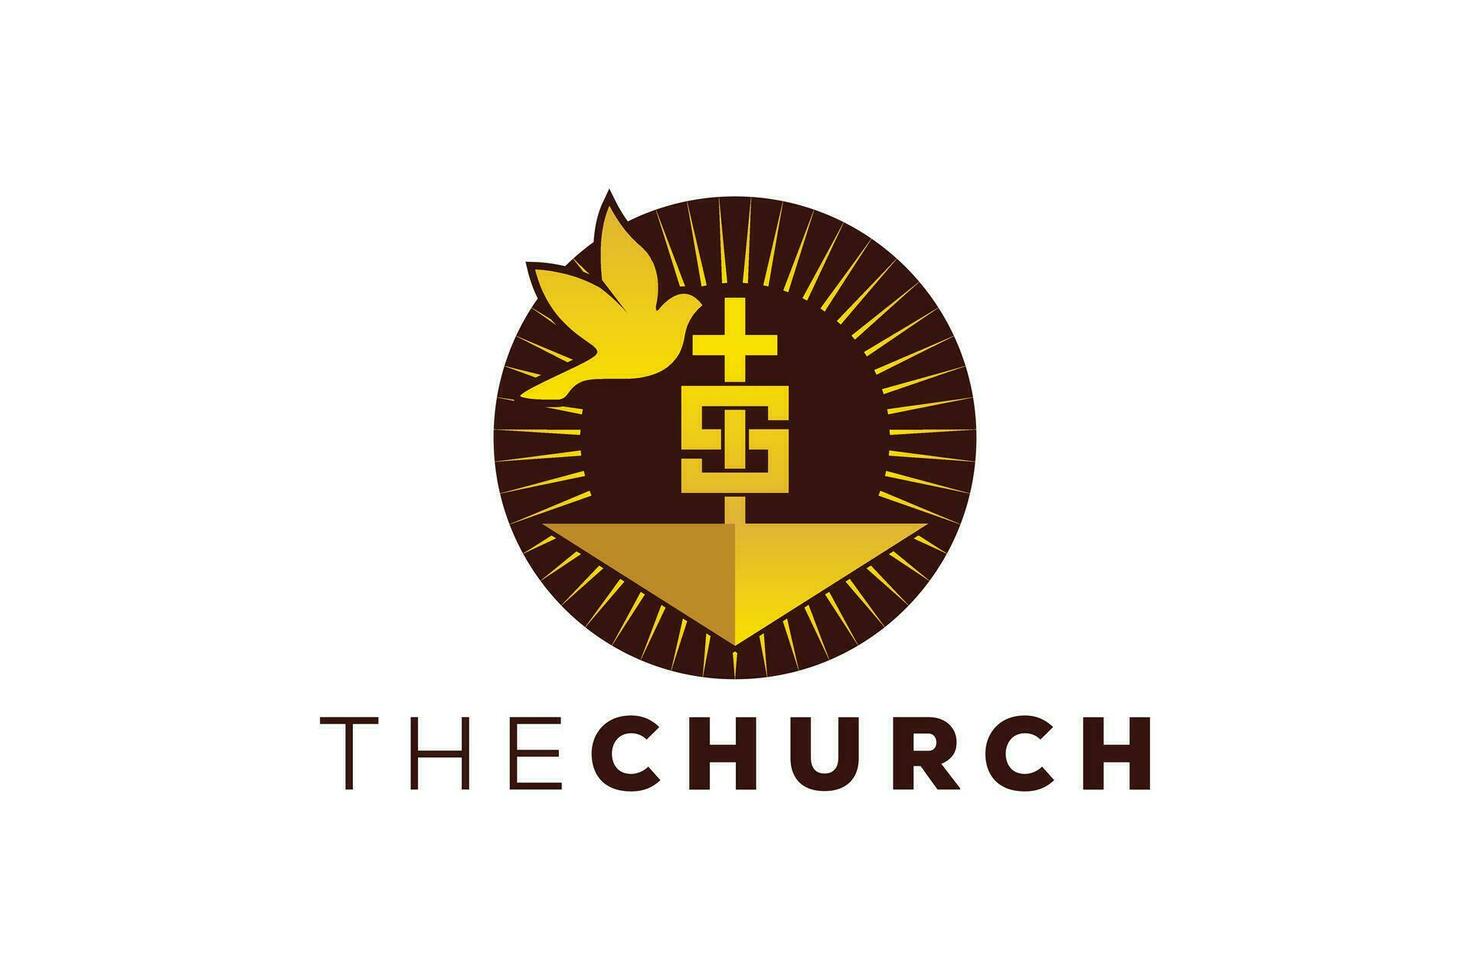 trendig och professionell brev s kyrka tecken kristen och fredlig vektor logotyp 1